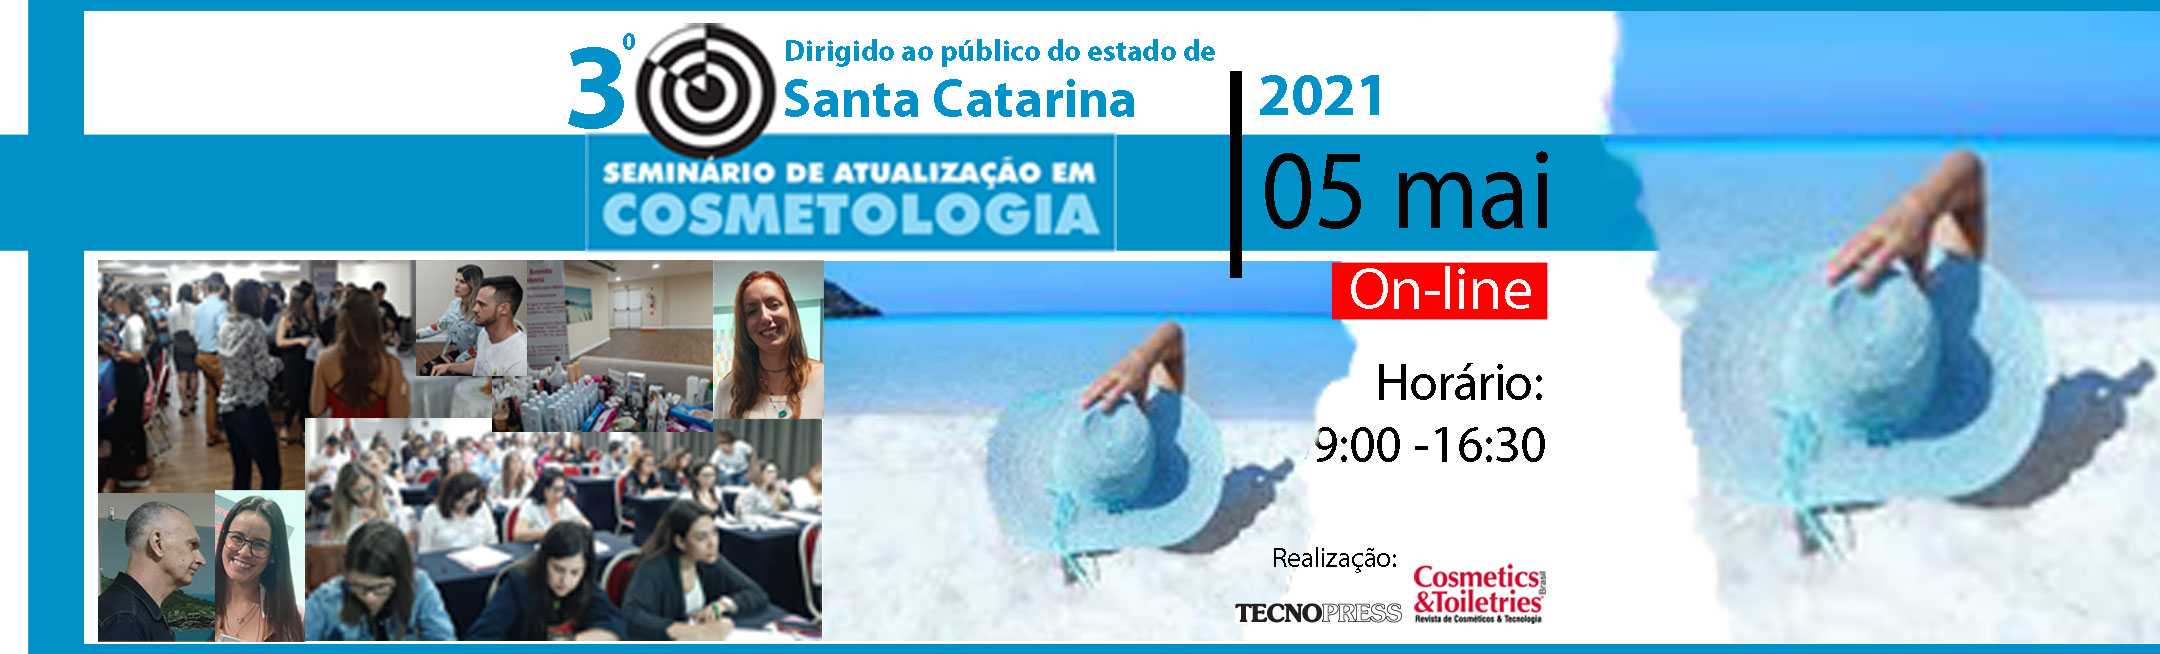 3º Seminário de Atualização em Cosmetologia de Santa Catarina